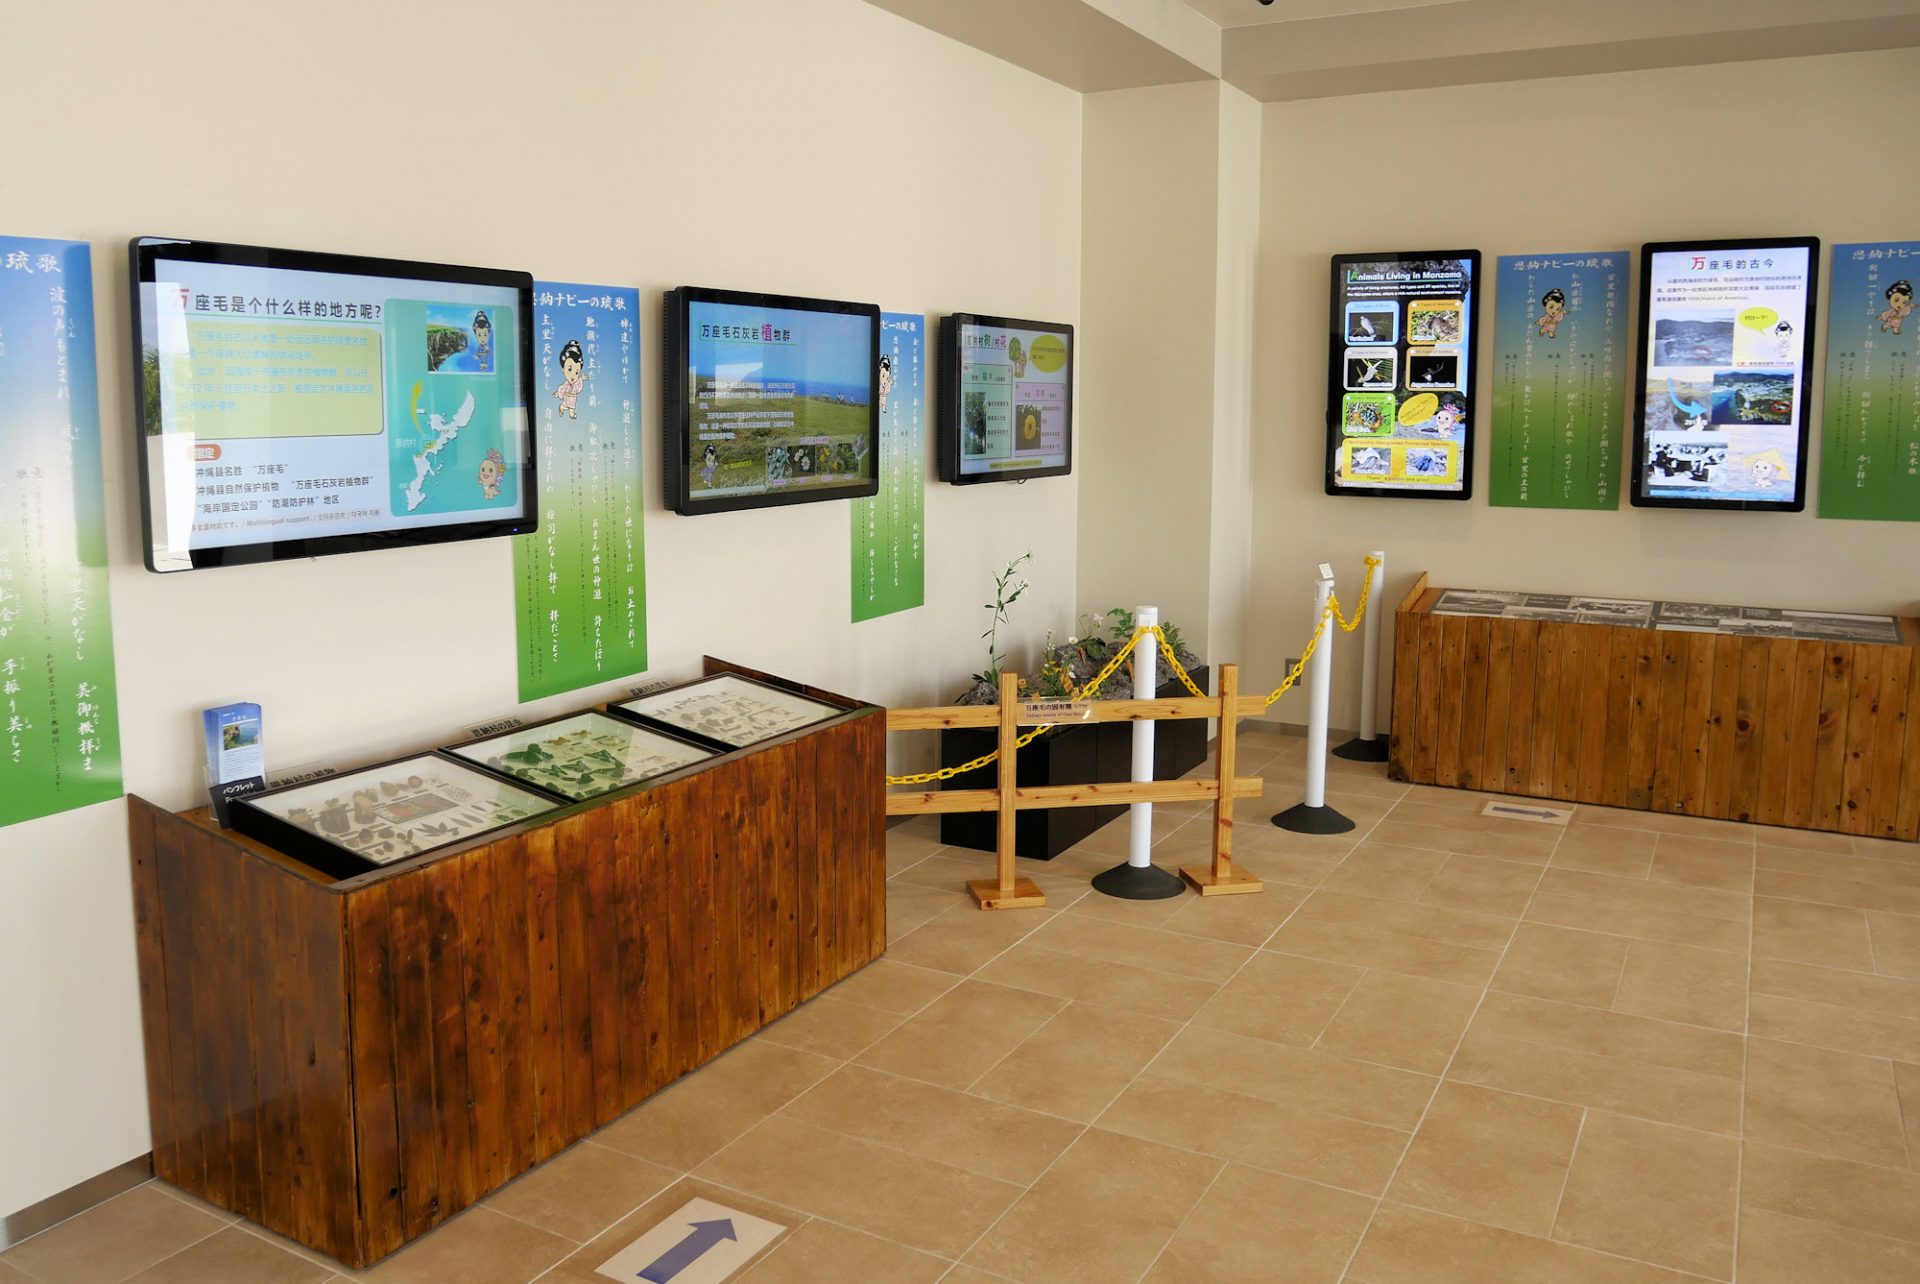 入口には万座毛の植物や動物を学習できるような展示物があります。